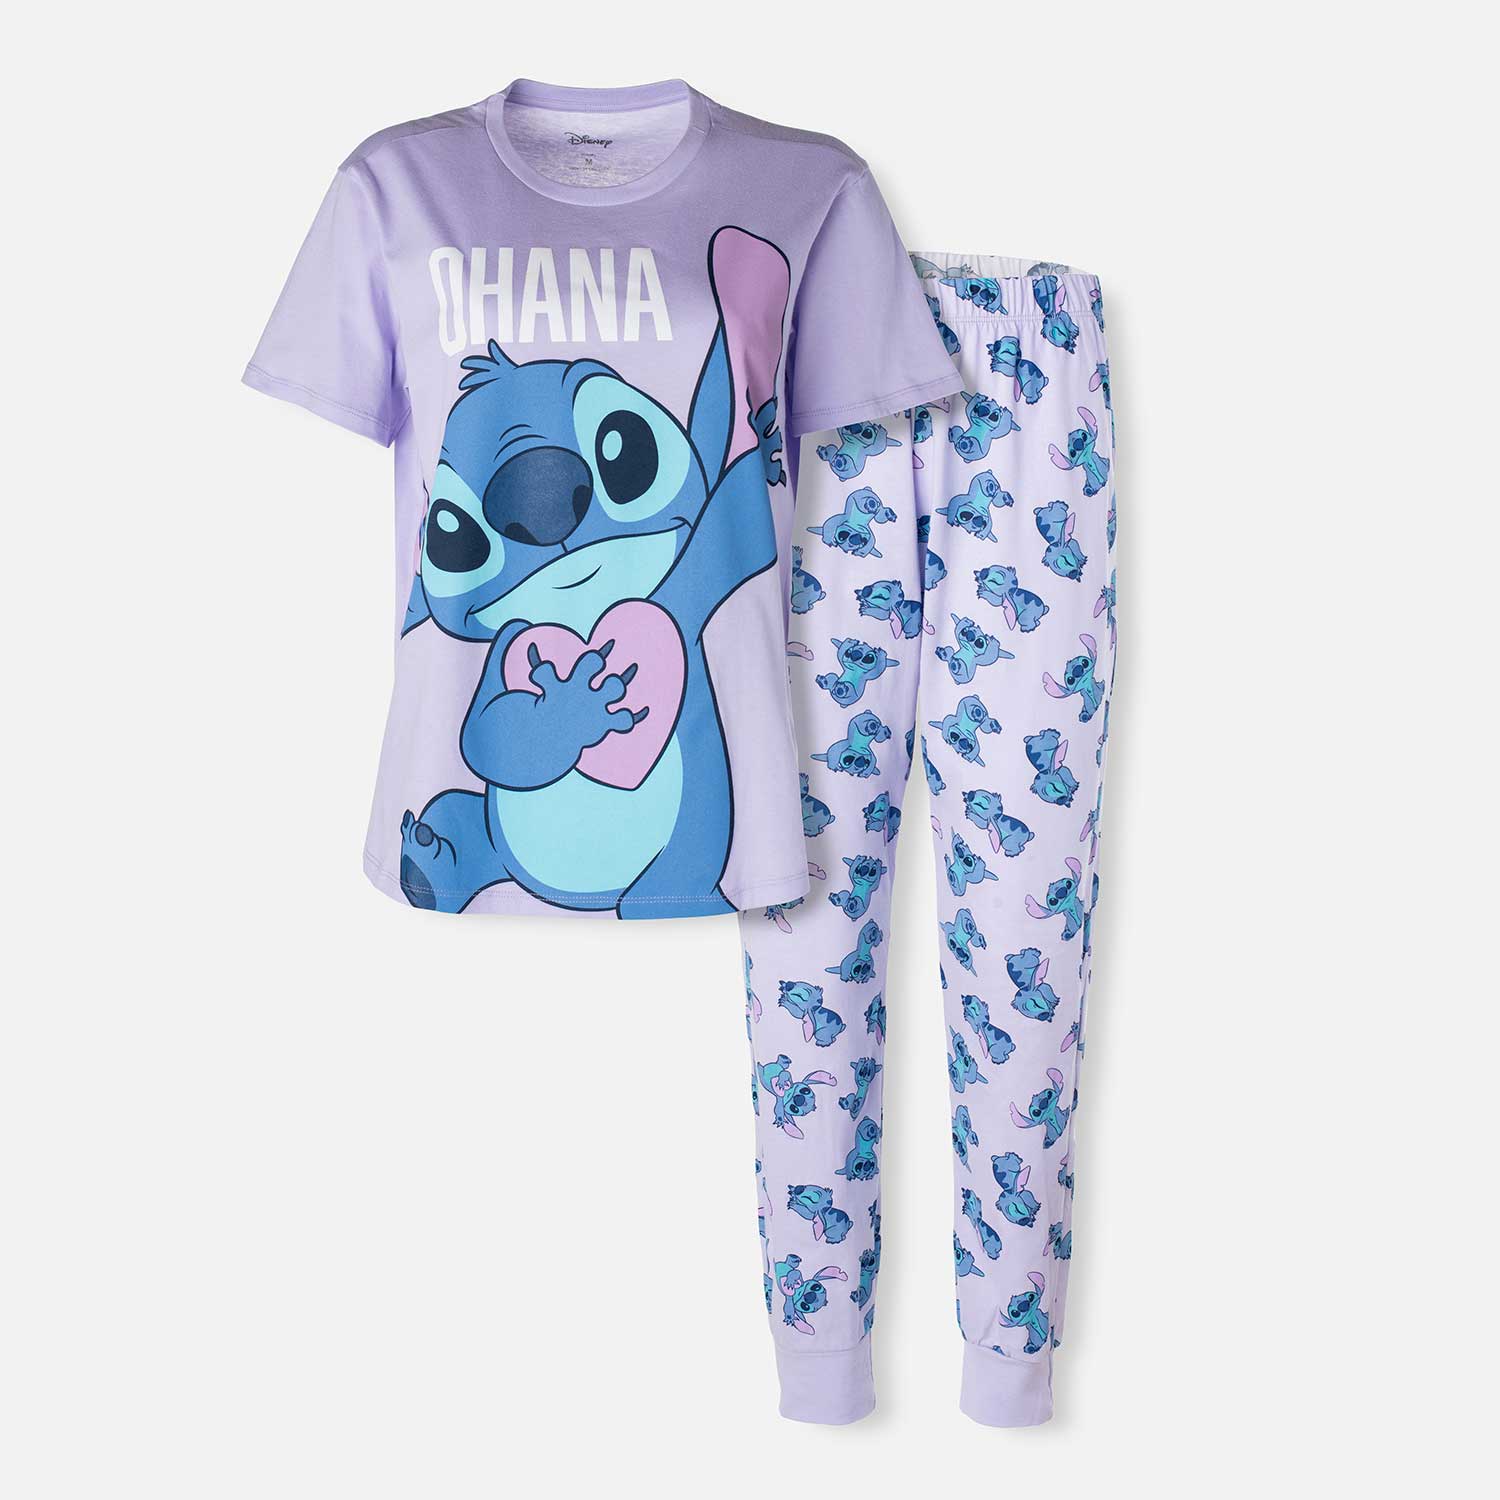 Pijama de Lilo y Stitch lila de pantalón largo para mujer